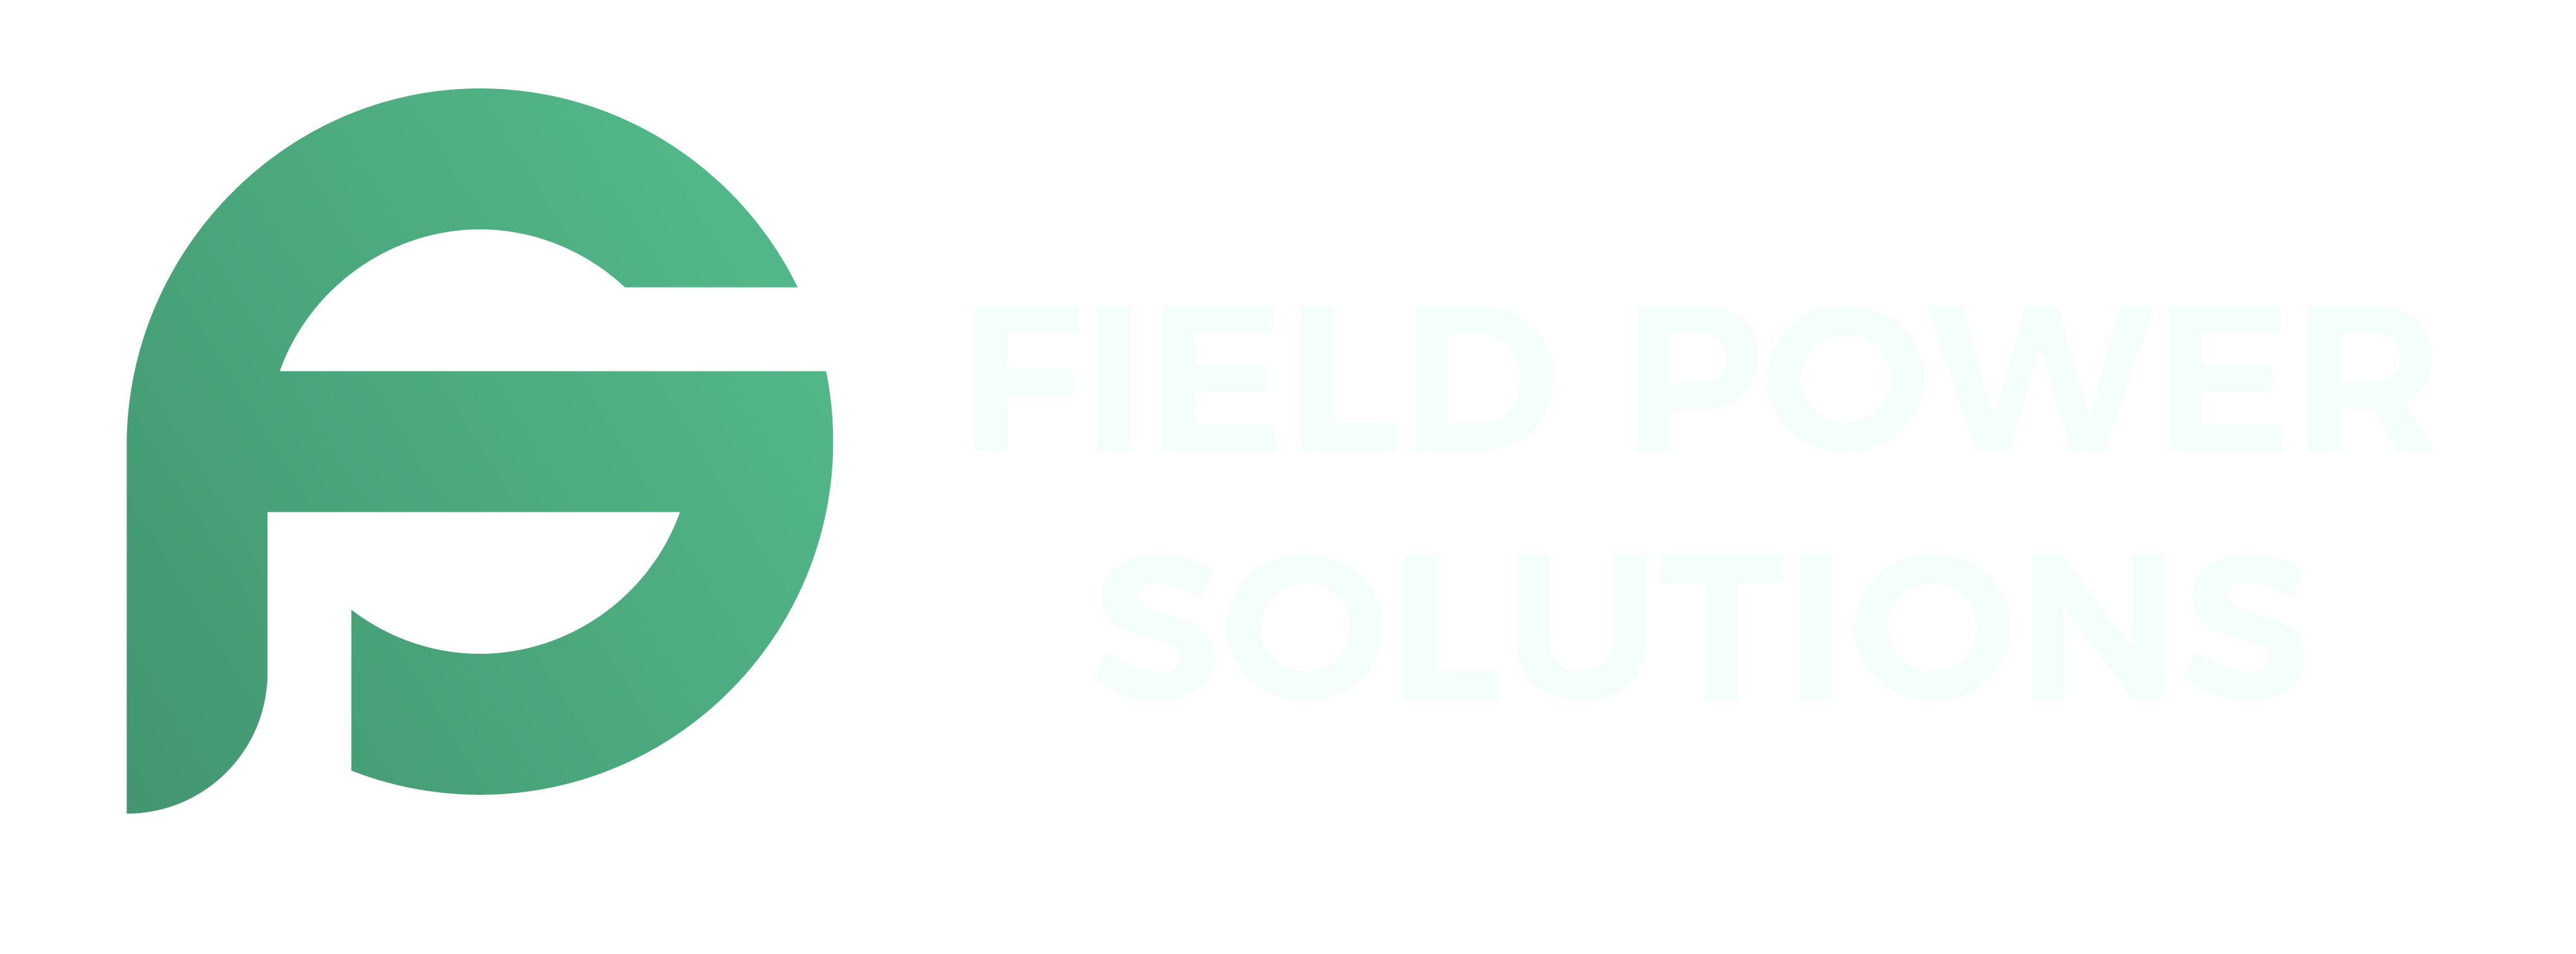 Field PS